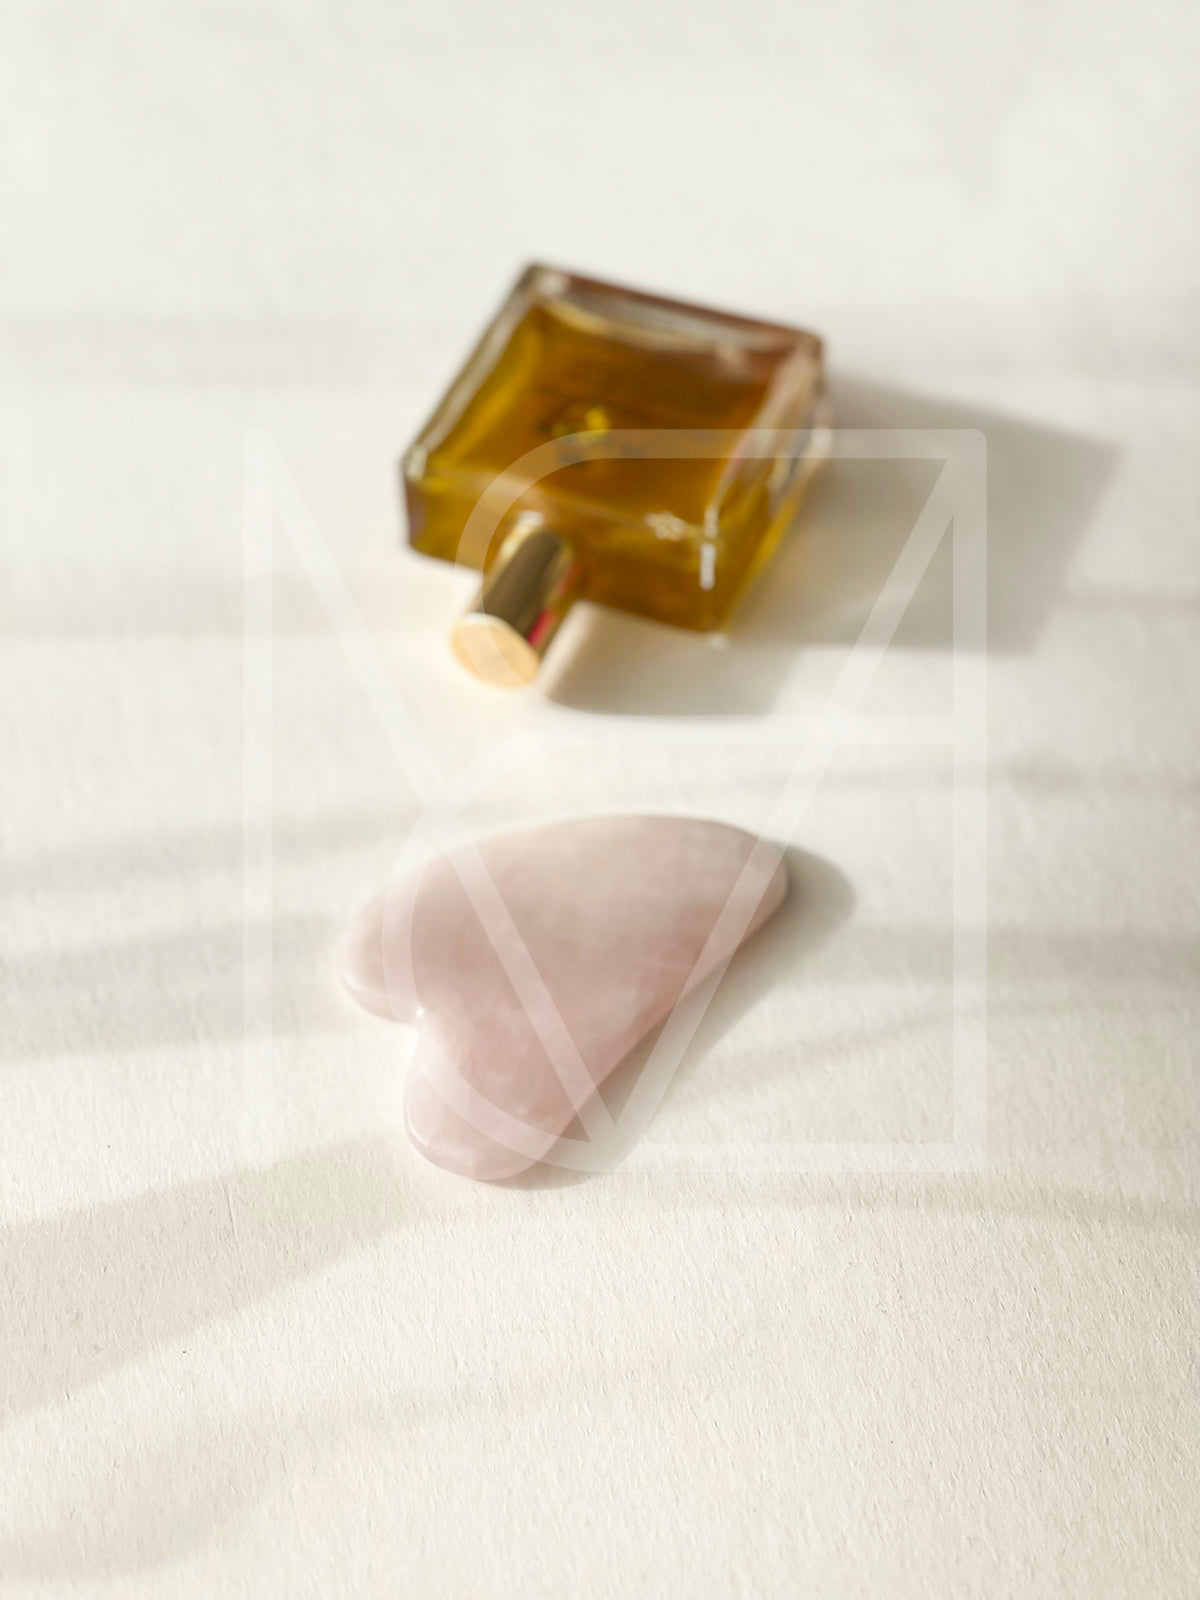 Гуа Ша камък от естествен розов кварц